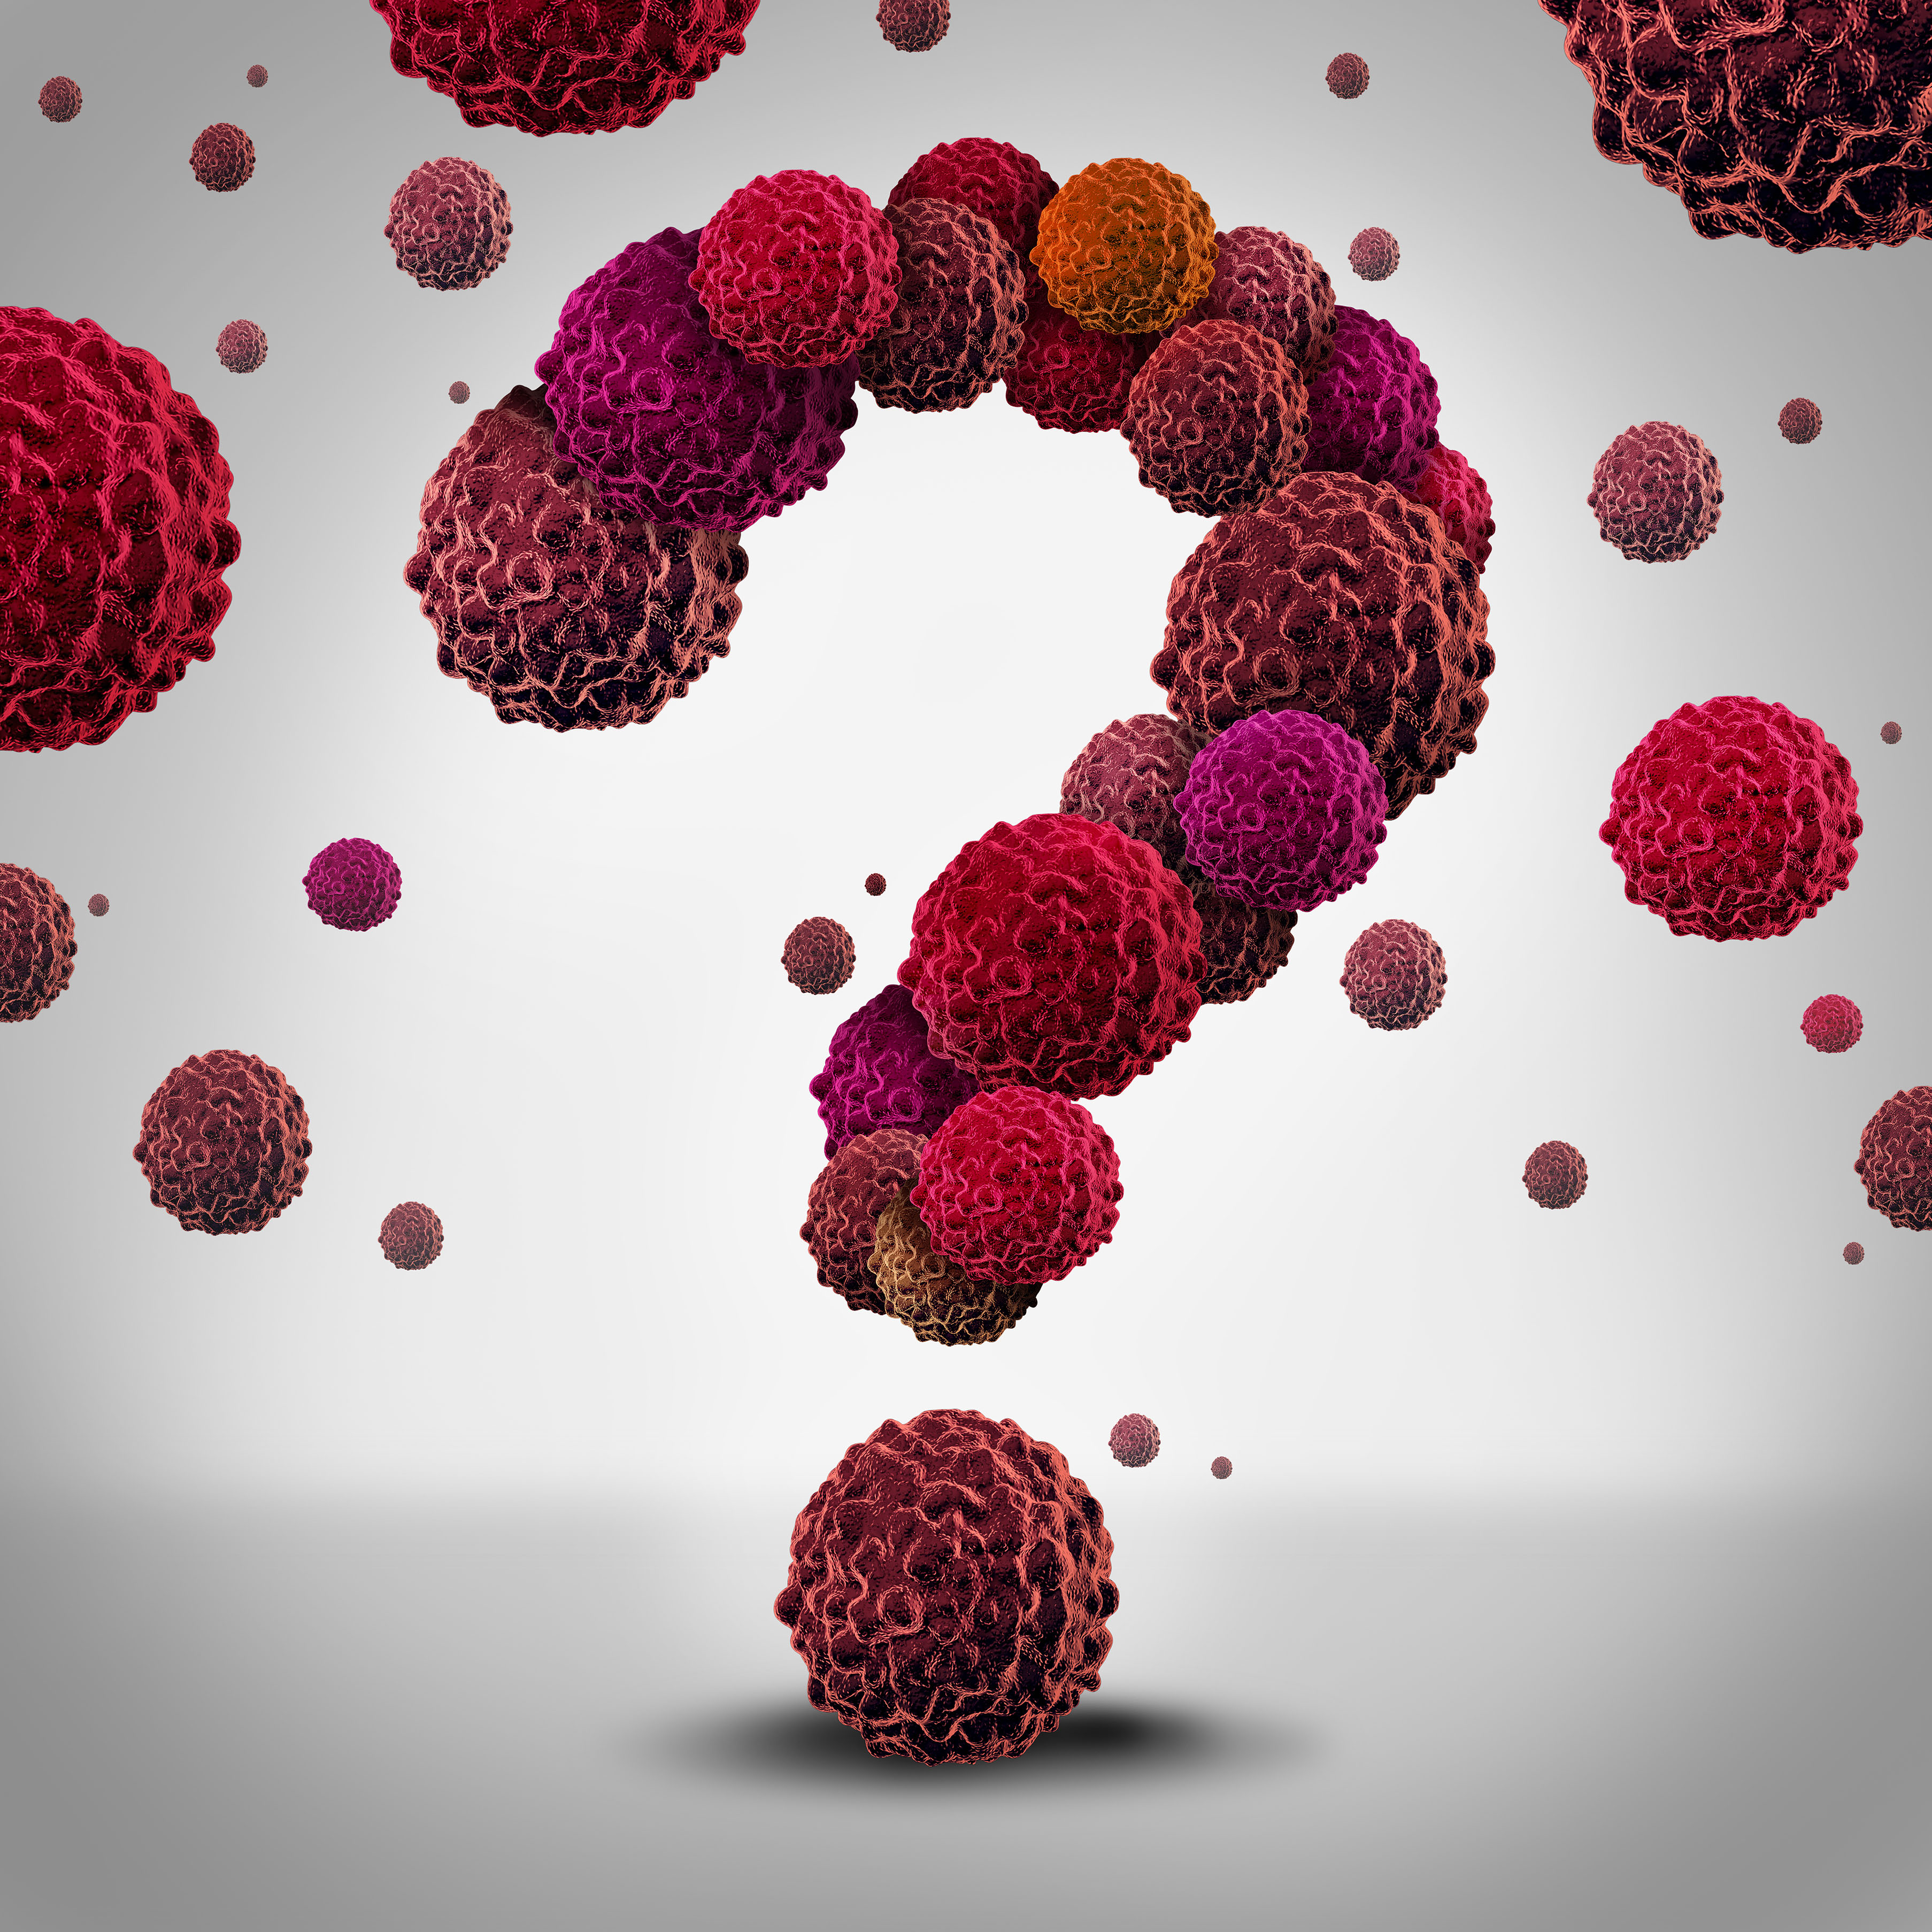 Диагностирован ли рак у Ваших кровных родственников?